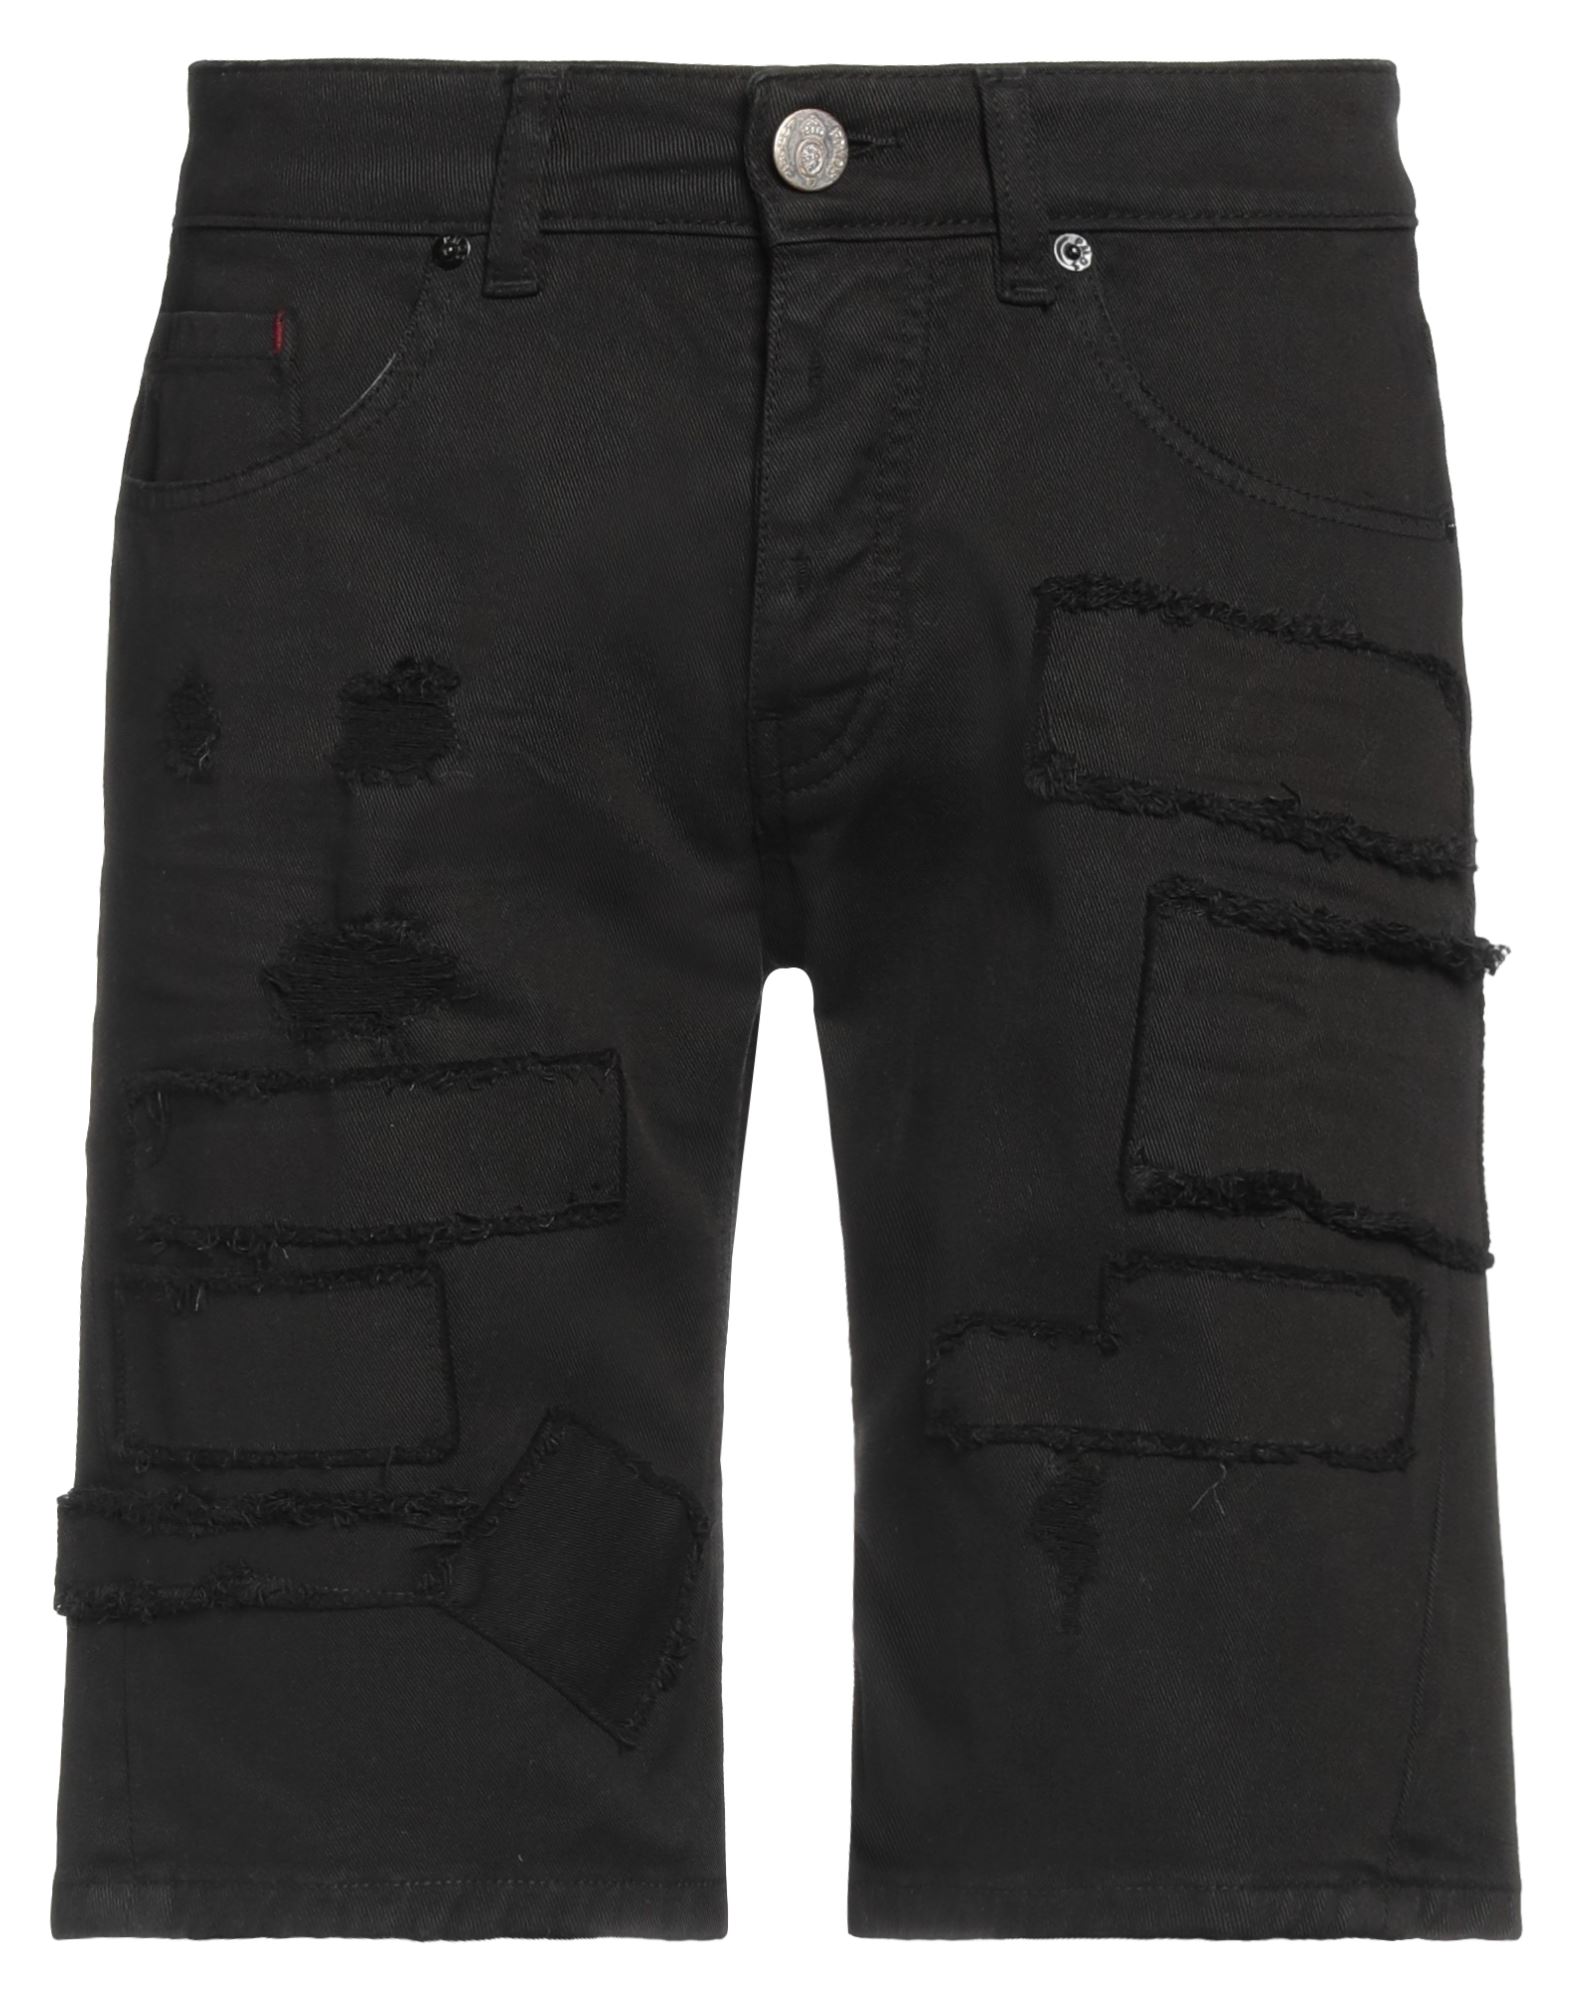 Pmds Premium Mood Denim Superior Denim Shorts In Black